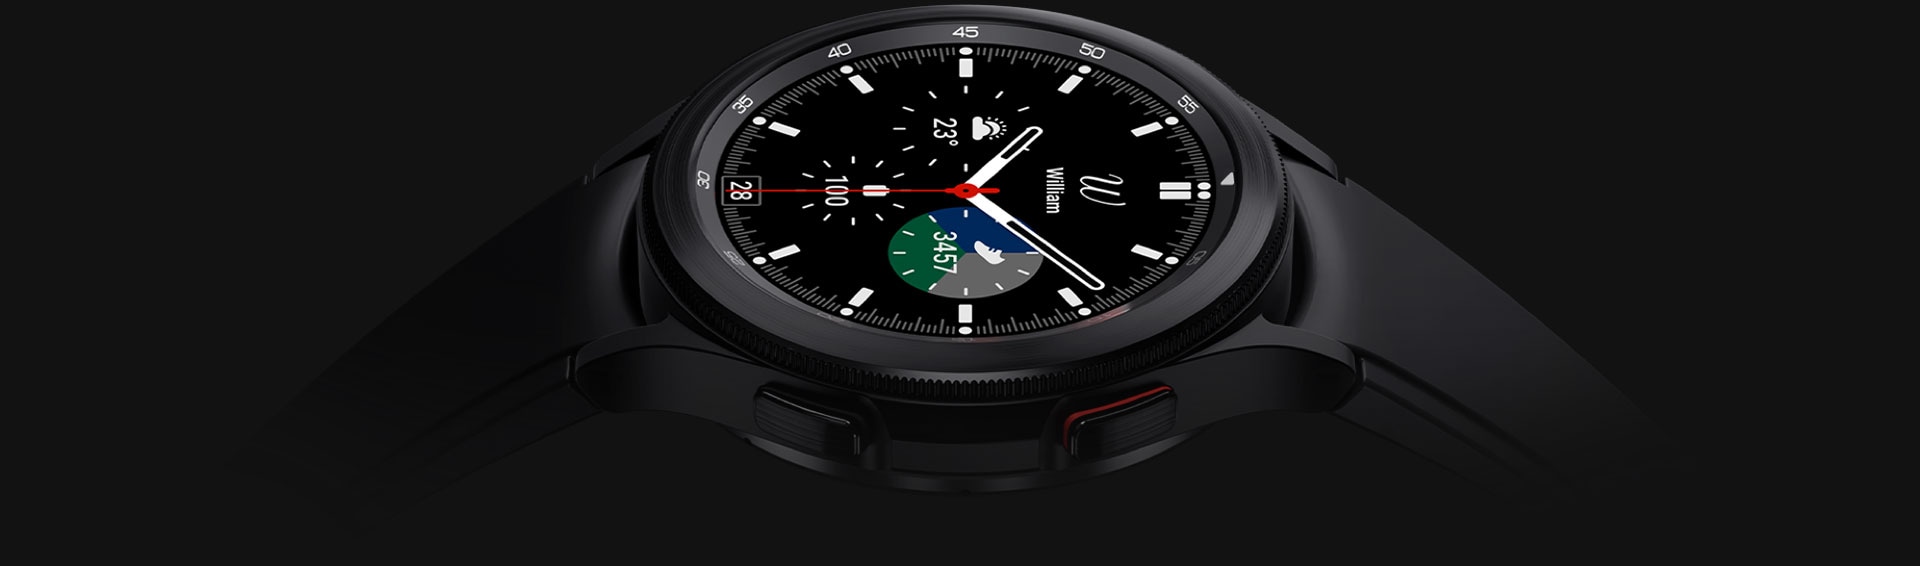 واجهة ساعة Galaxy Watch4 Classic سوداء اللون، وجهها لأعلى وتظهر الوقت.